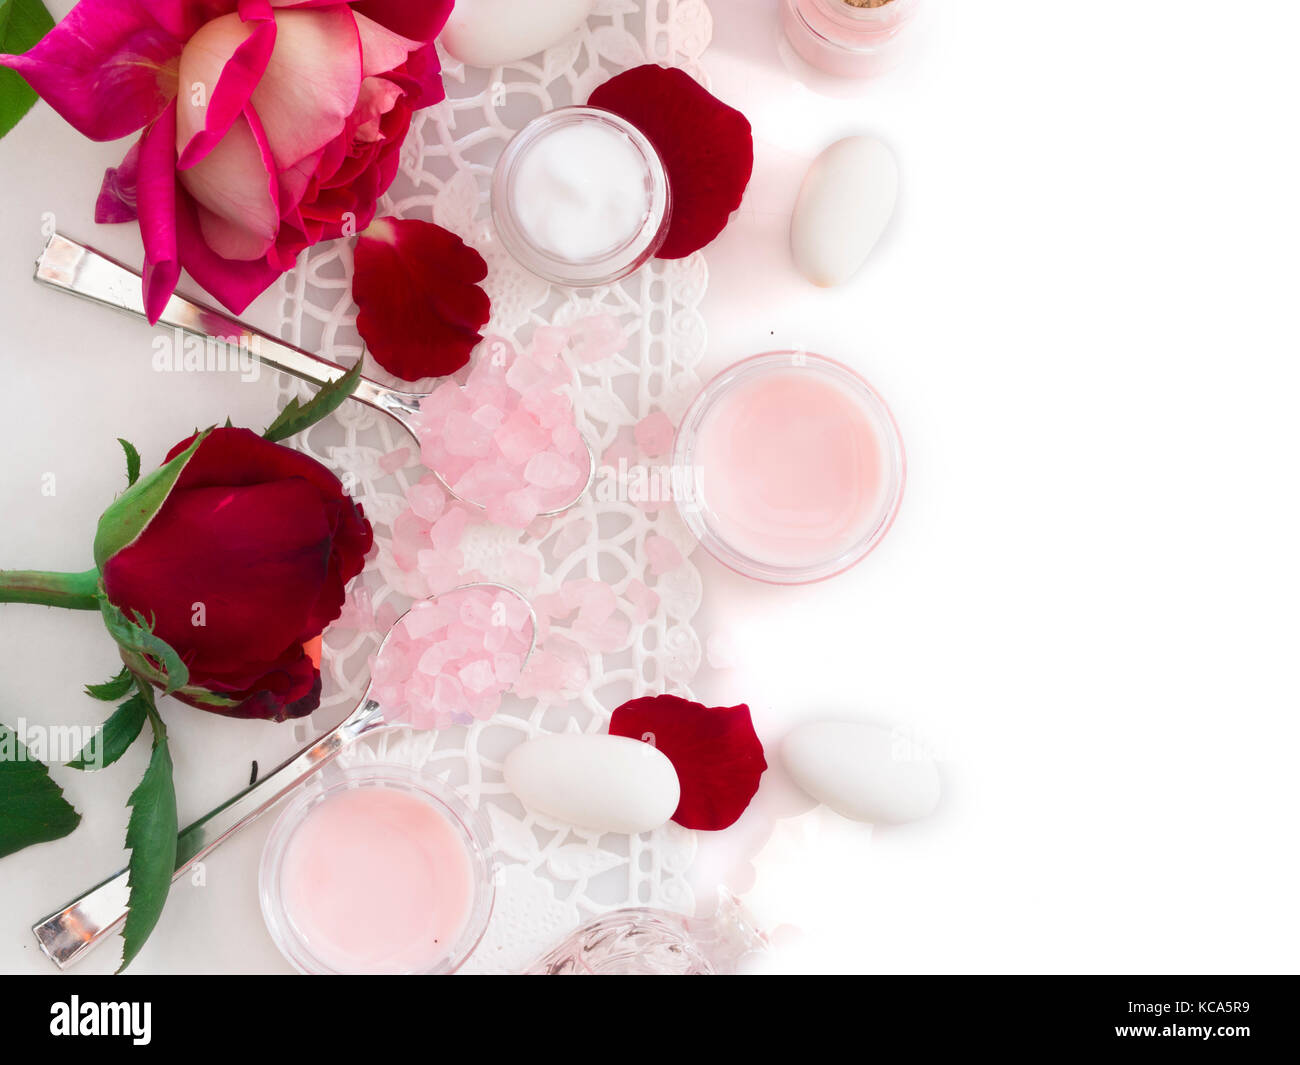 Les cosmétiques rose Banque D'Images